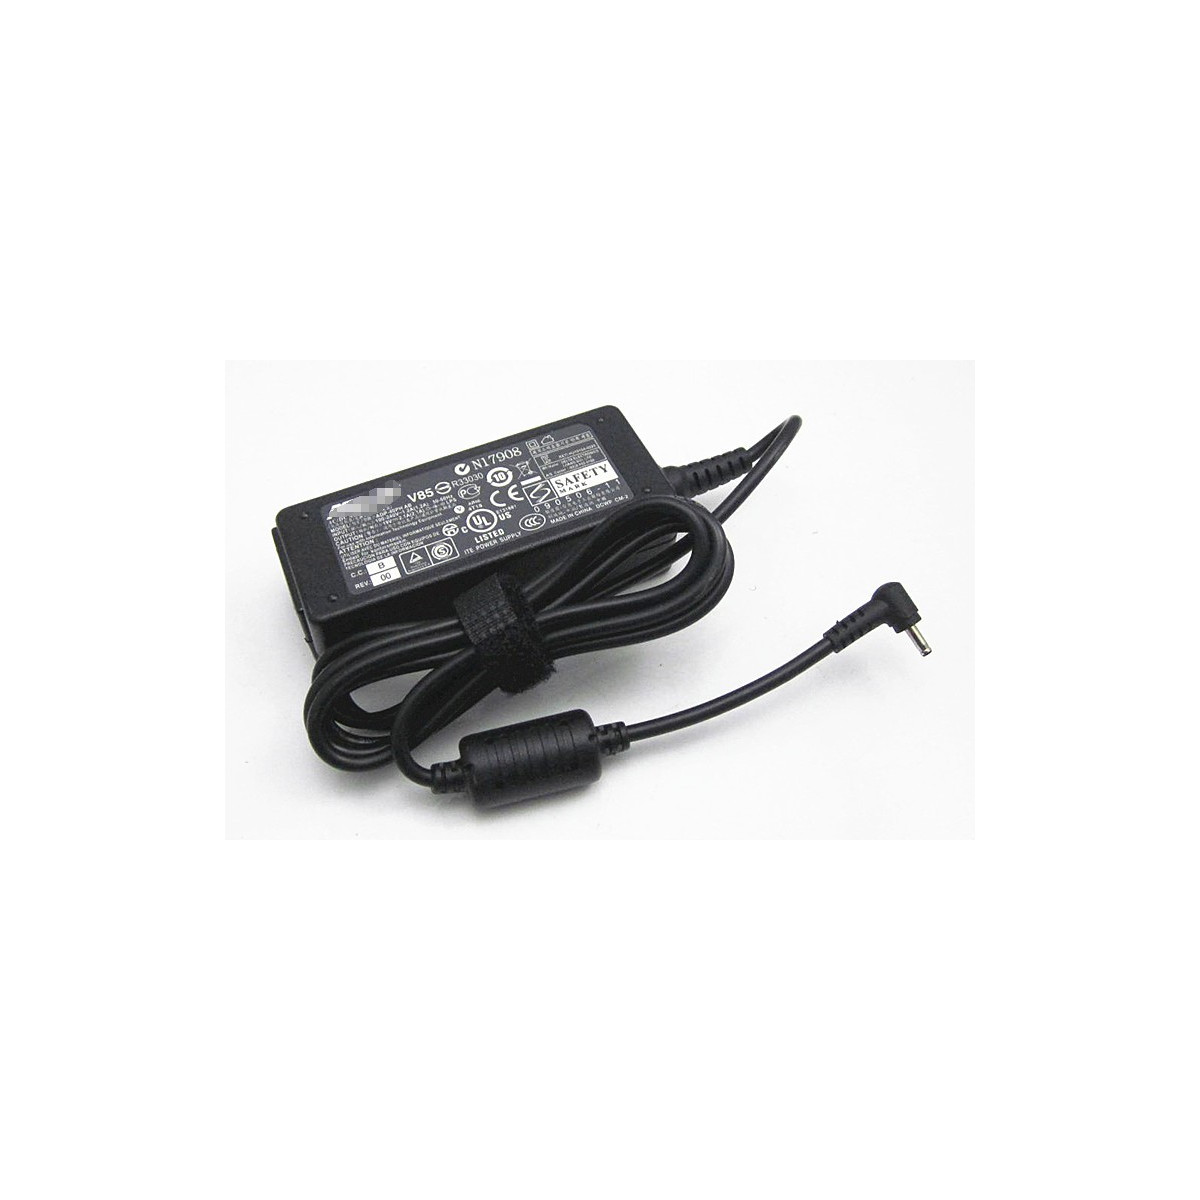 Chargeur Pc Portable Asus Adaptable 19V 3.42A au meilleur prix